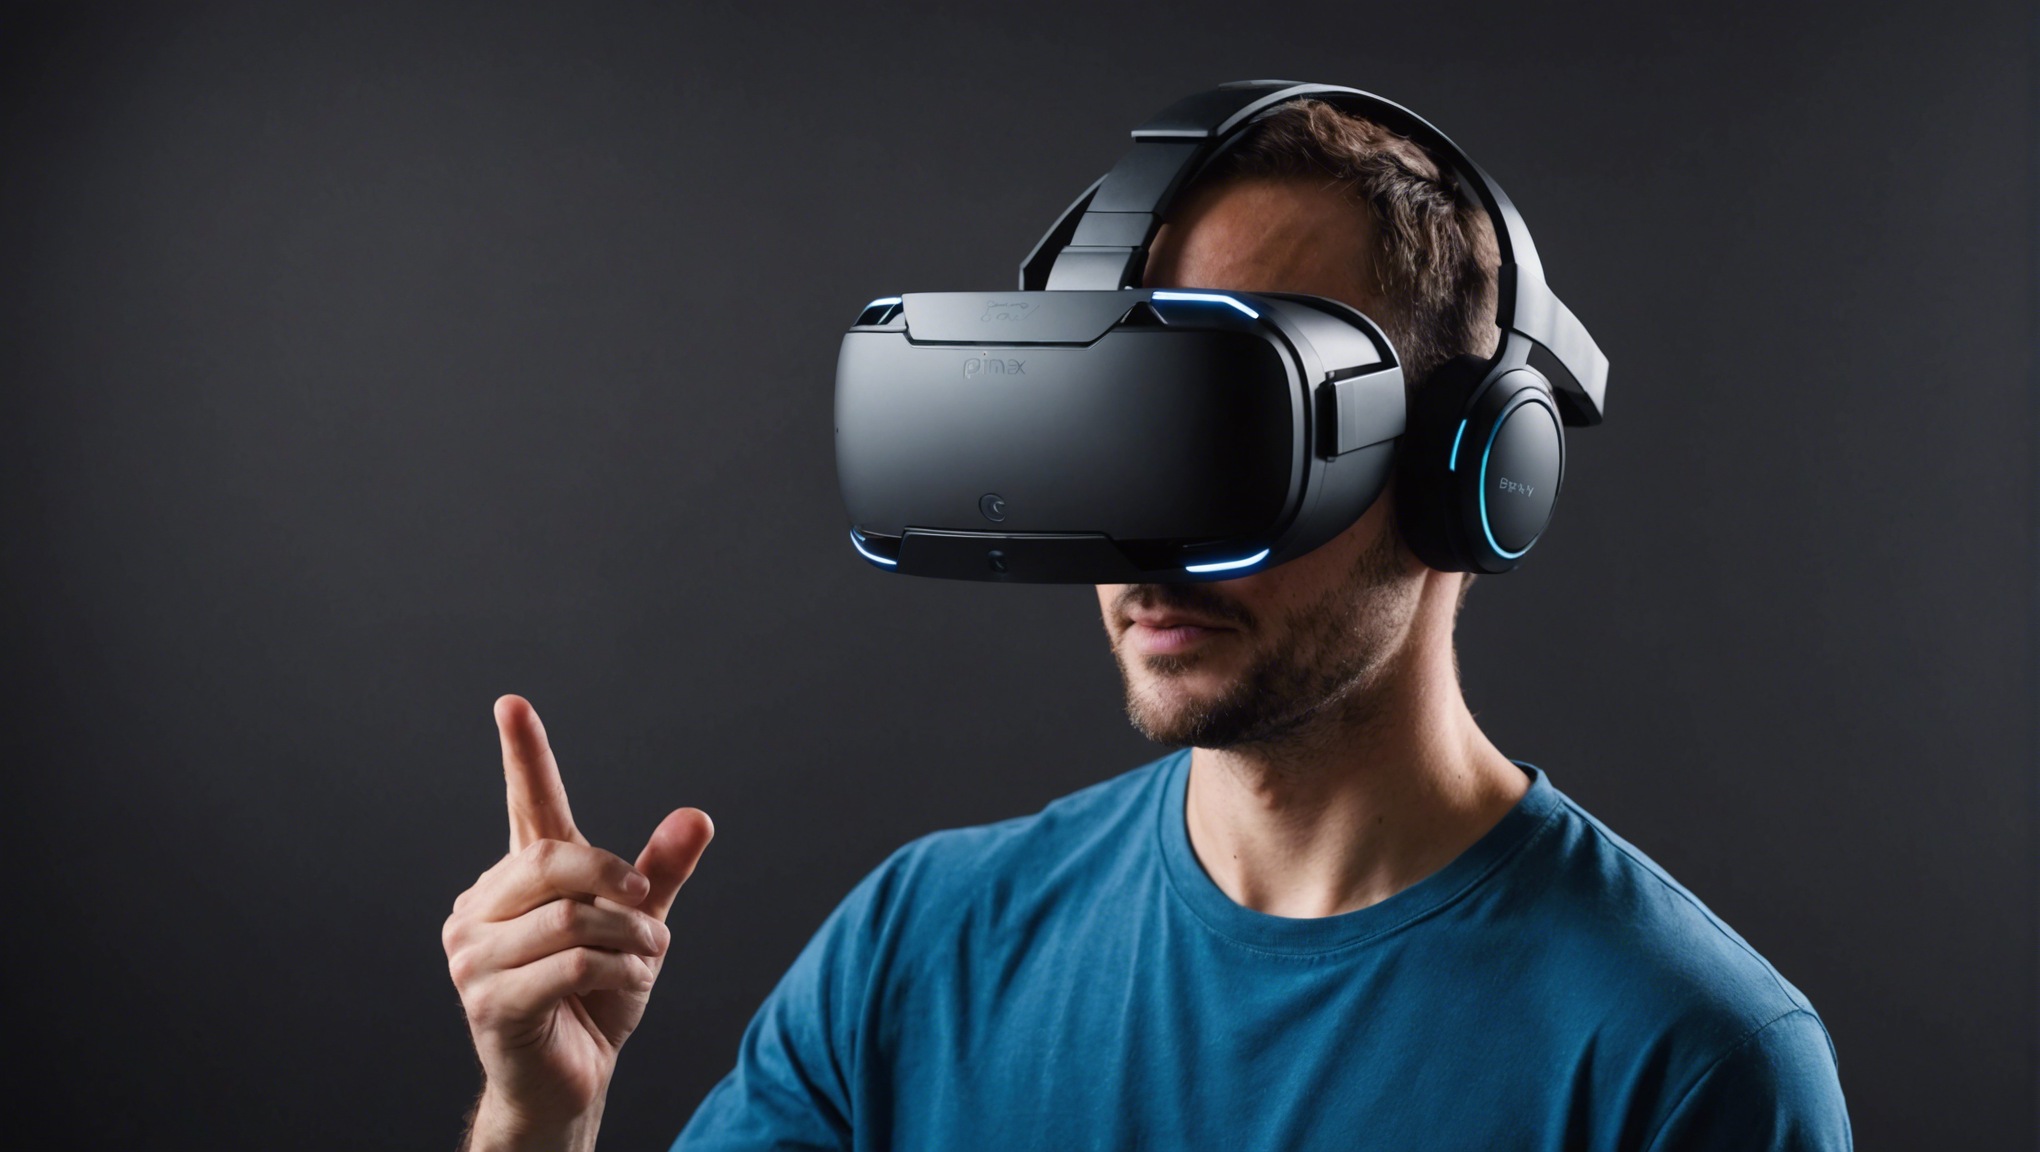 découvrez le casque de réalité virtuelle pimax 8kx, une révolution immersif ! profitez d'une expérience visuelle exceptionnelle avec une netteté inégalée et une immersion totale dans vos mondes virtuels préférés.